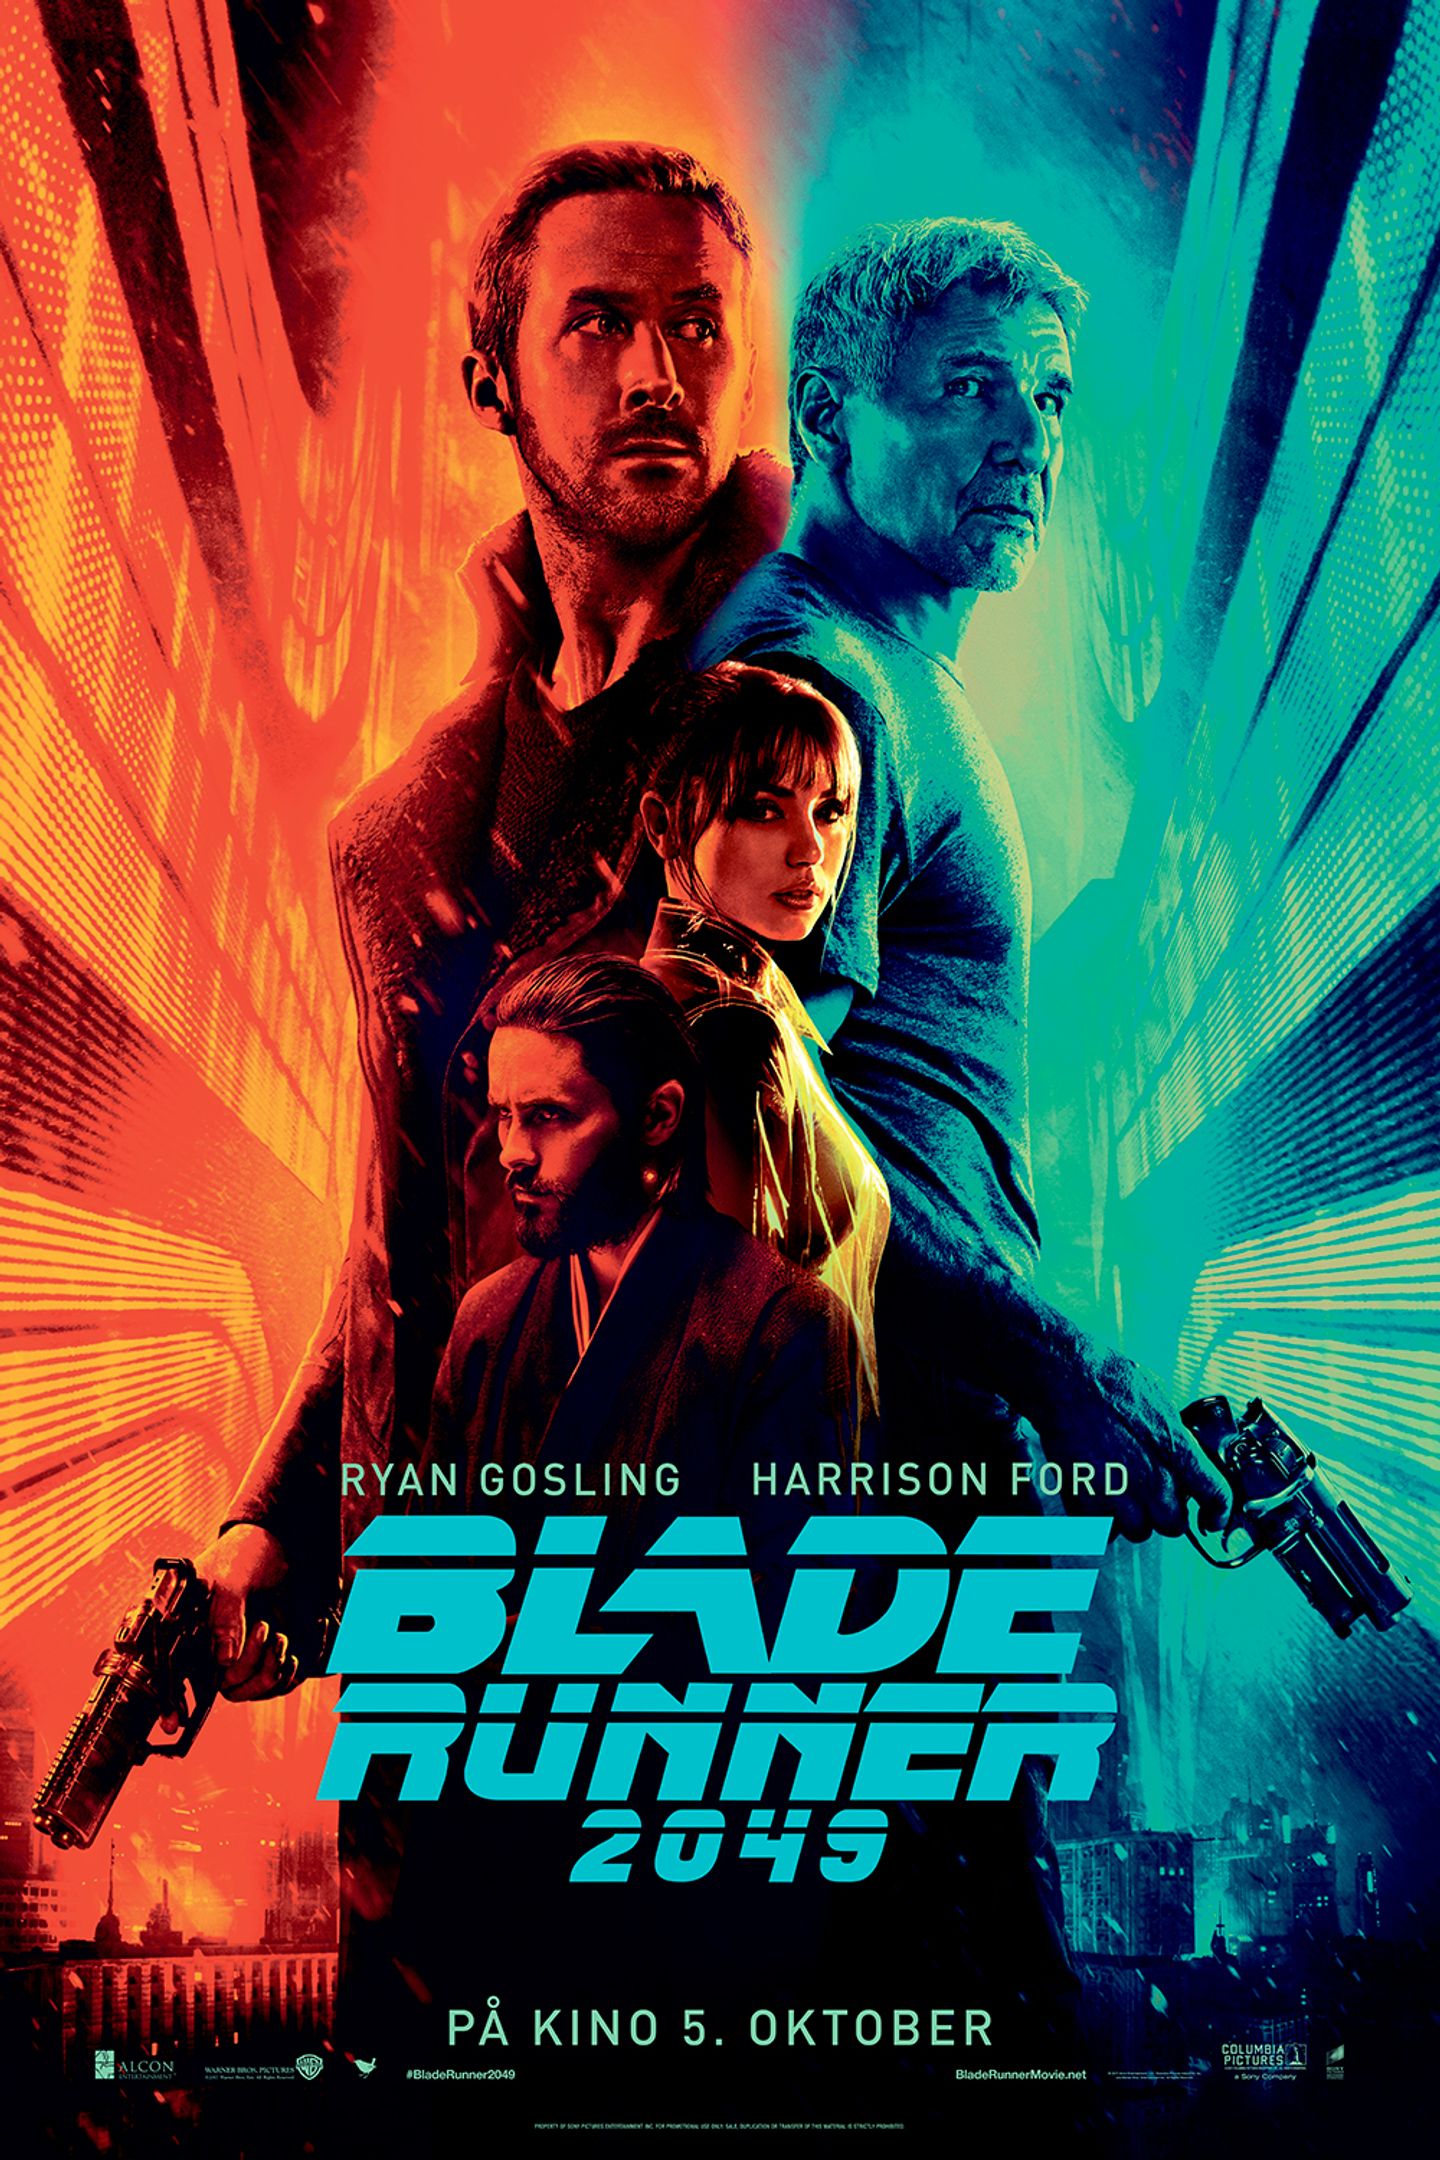 Plakat for 'Blade Runner 2049'